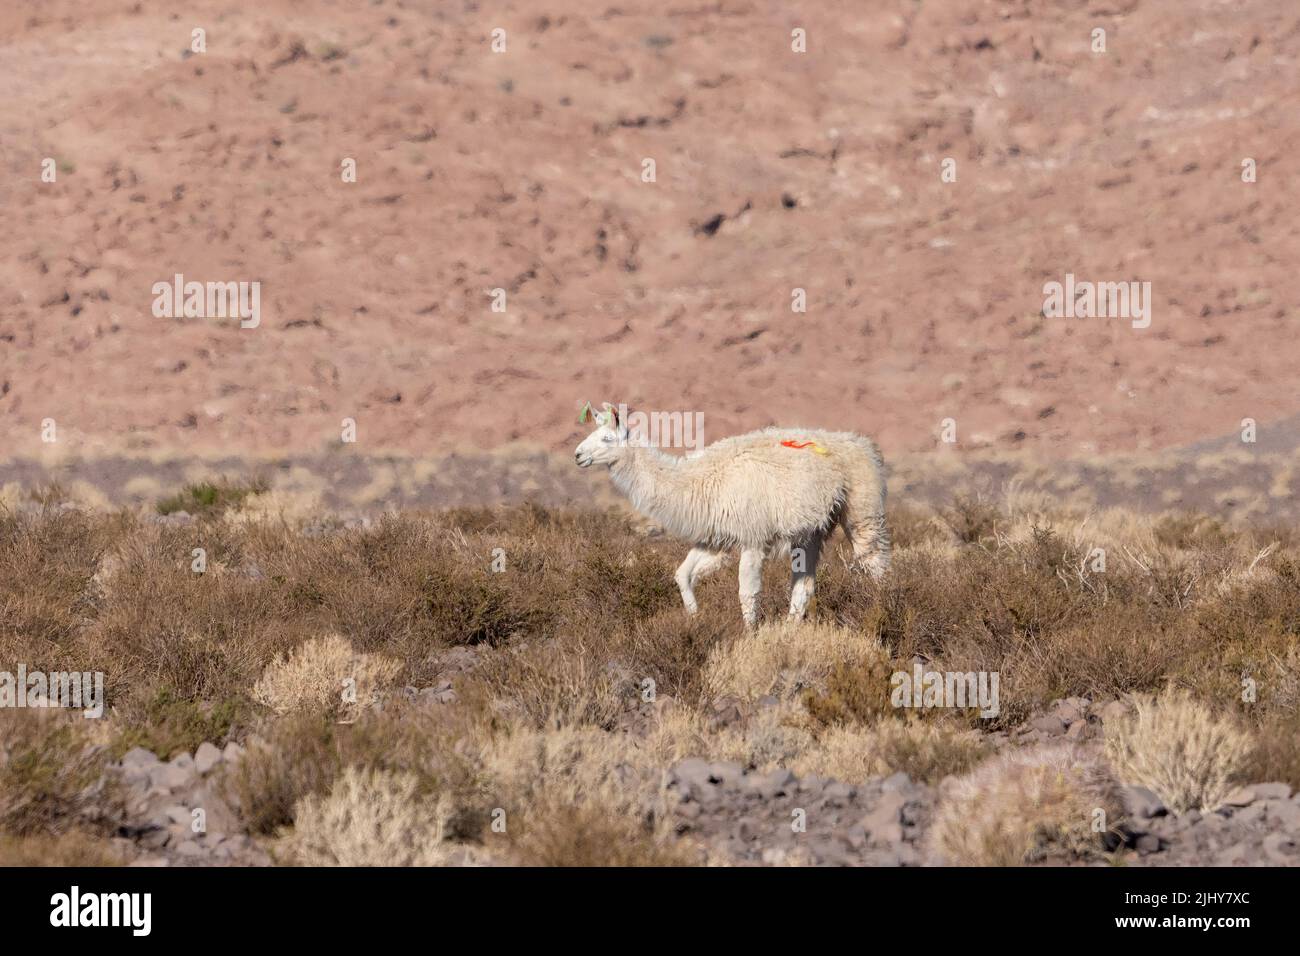 Ein heimisches Lama mit Quasten in den Ohren in der Atacama-Wüste bei San Pedro de Atacama, Chile. Garnknäuel identifizieren Eigentum. Stockfoto